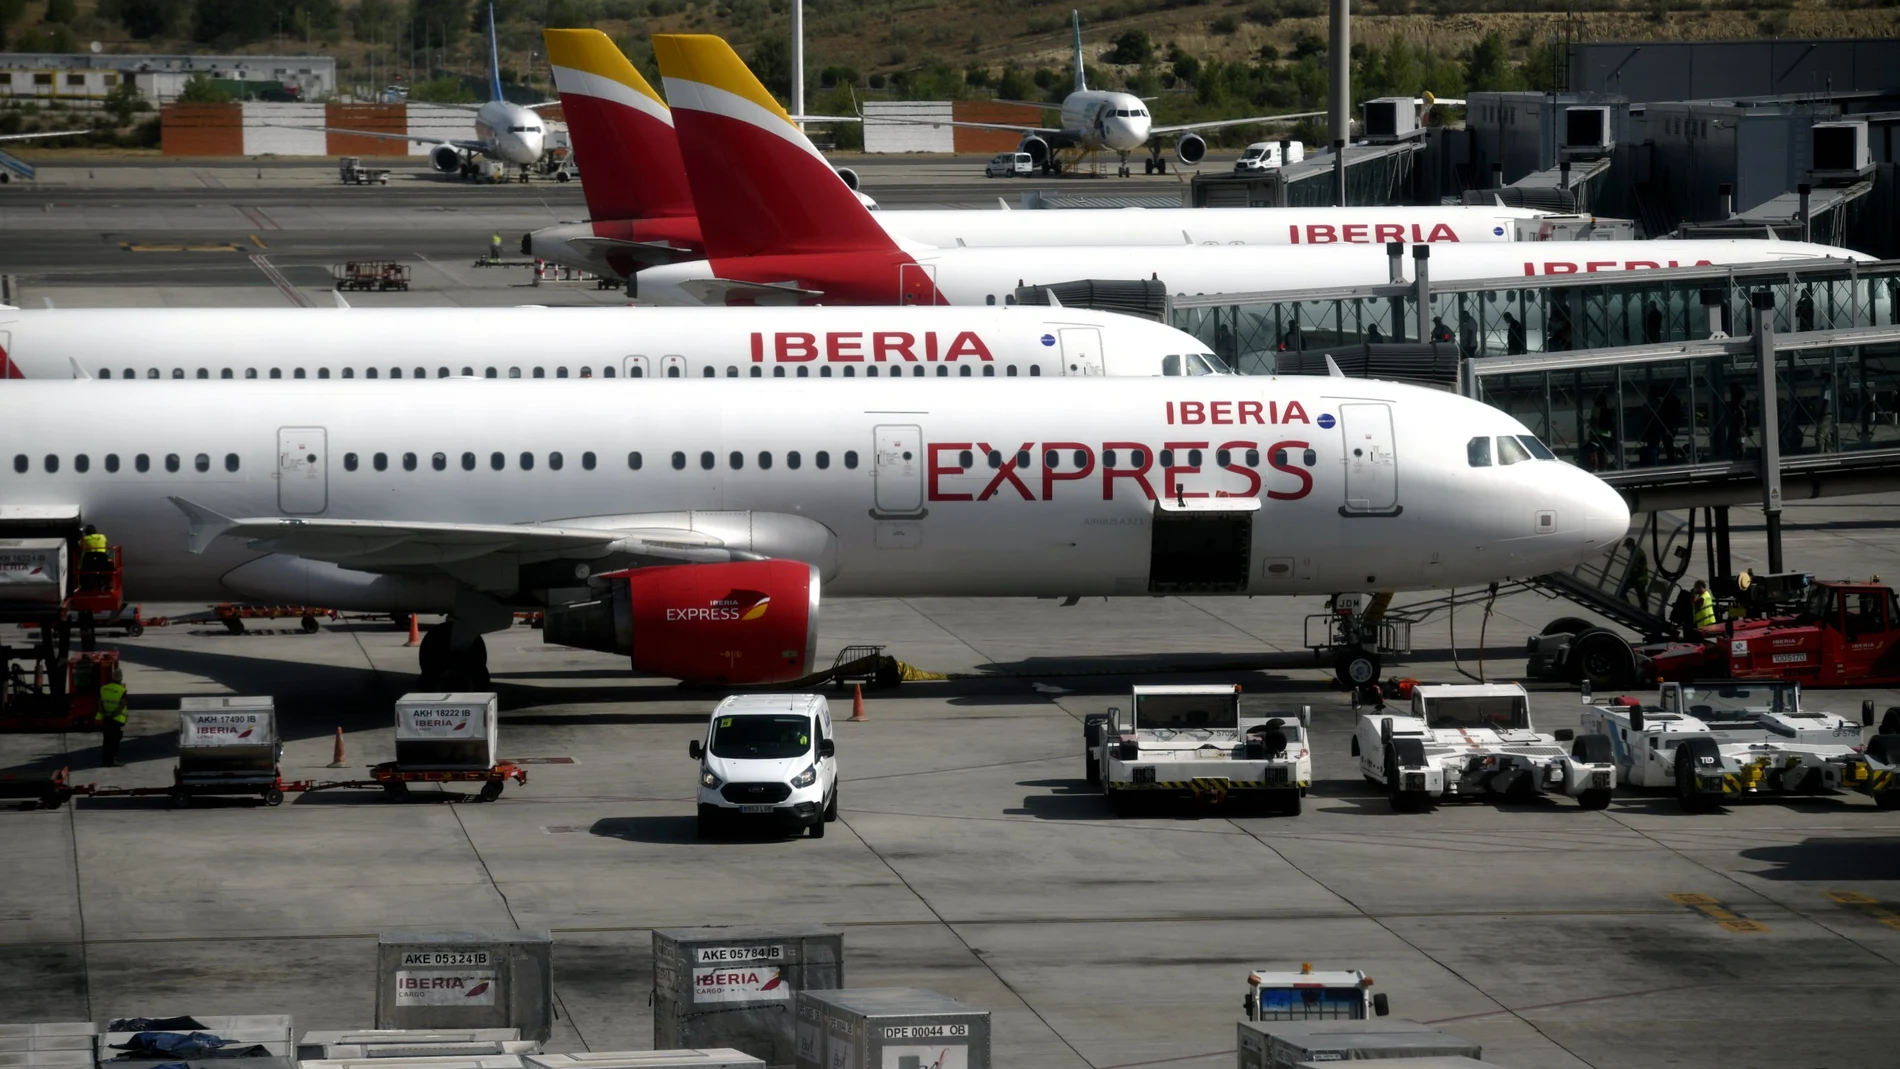 Aviones de Iberia Express en la terminal T4 del Aeropuerto de Madrid-Barajas Adolfo Suárez, en Madrid